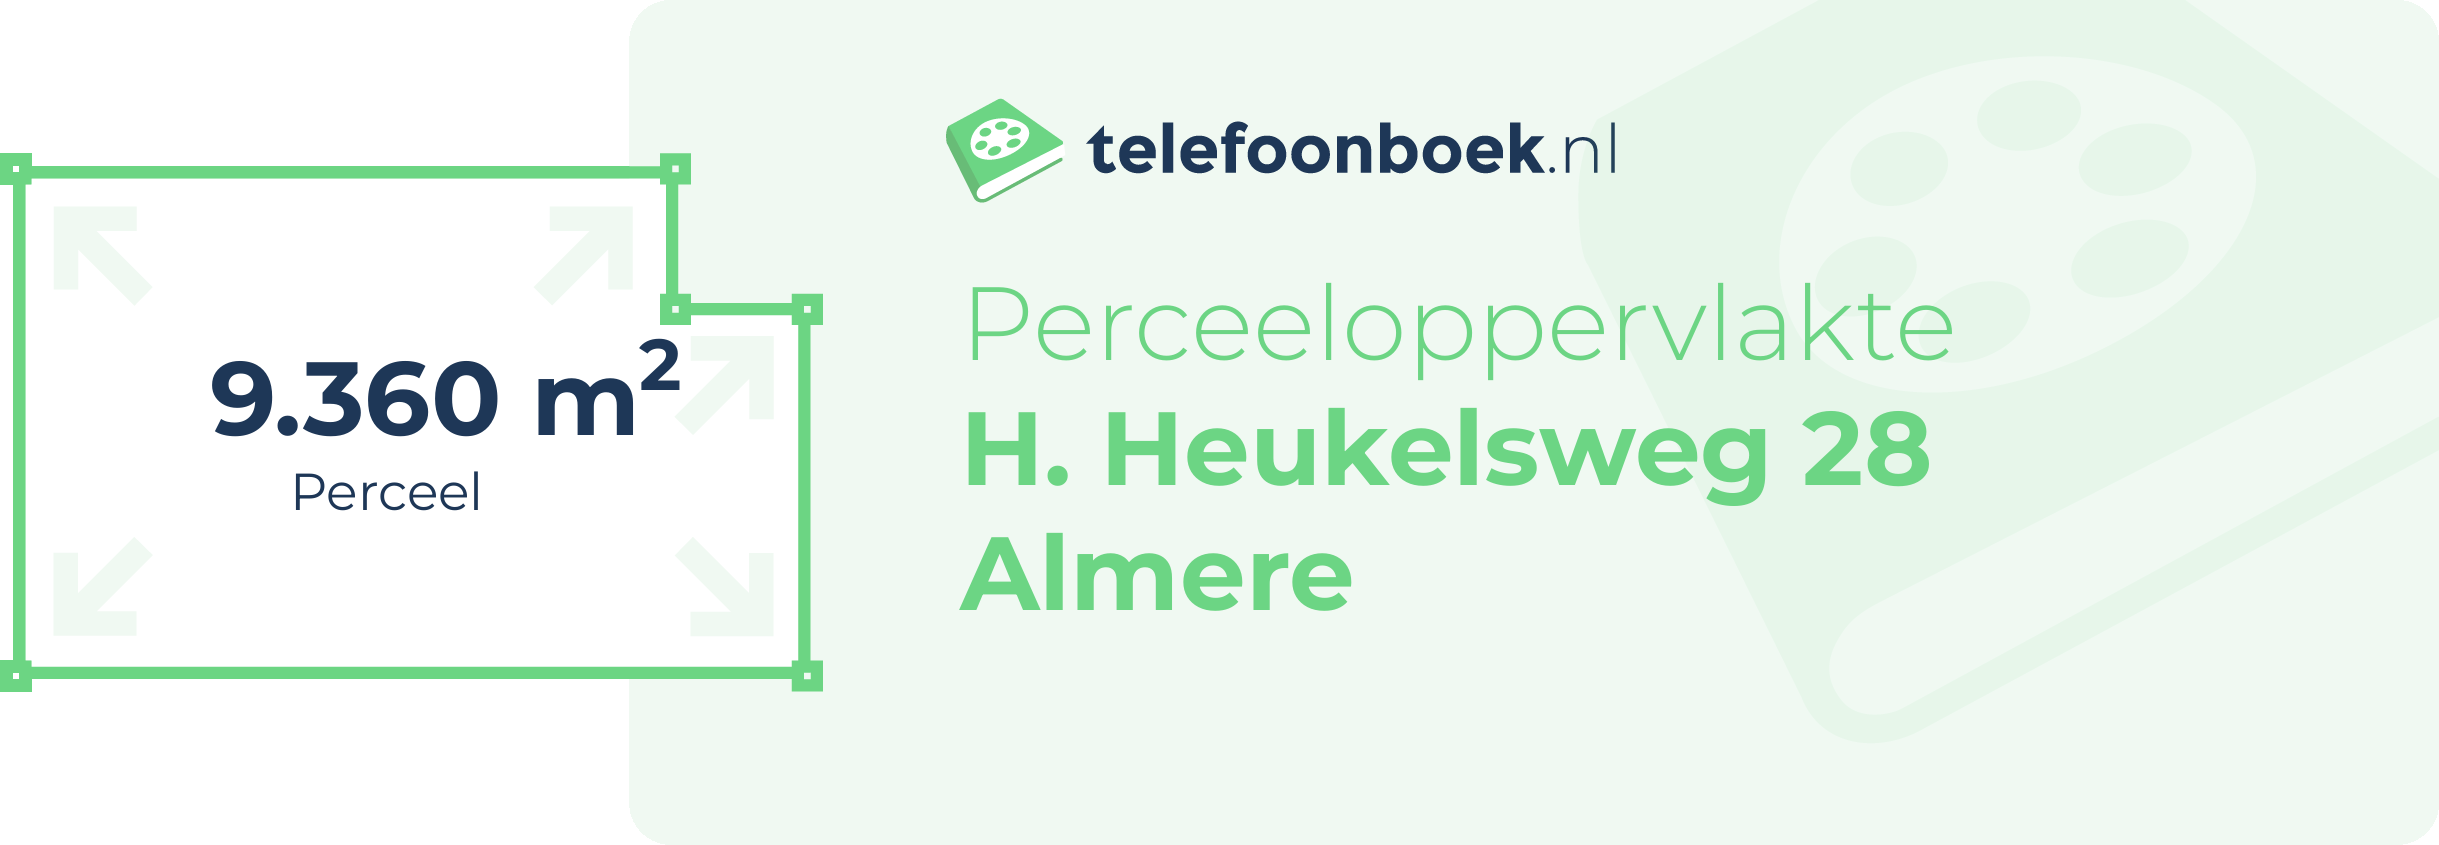 Perceeloppervlakte H. Heukelsweg 28 Almere